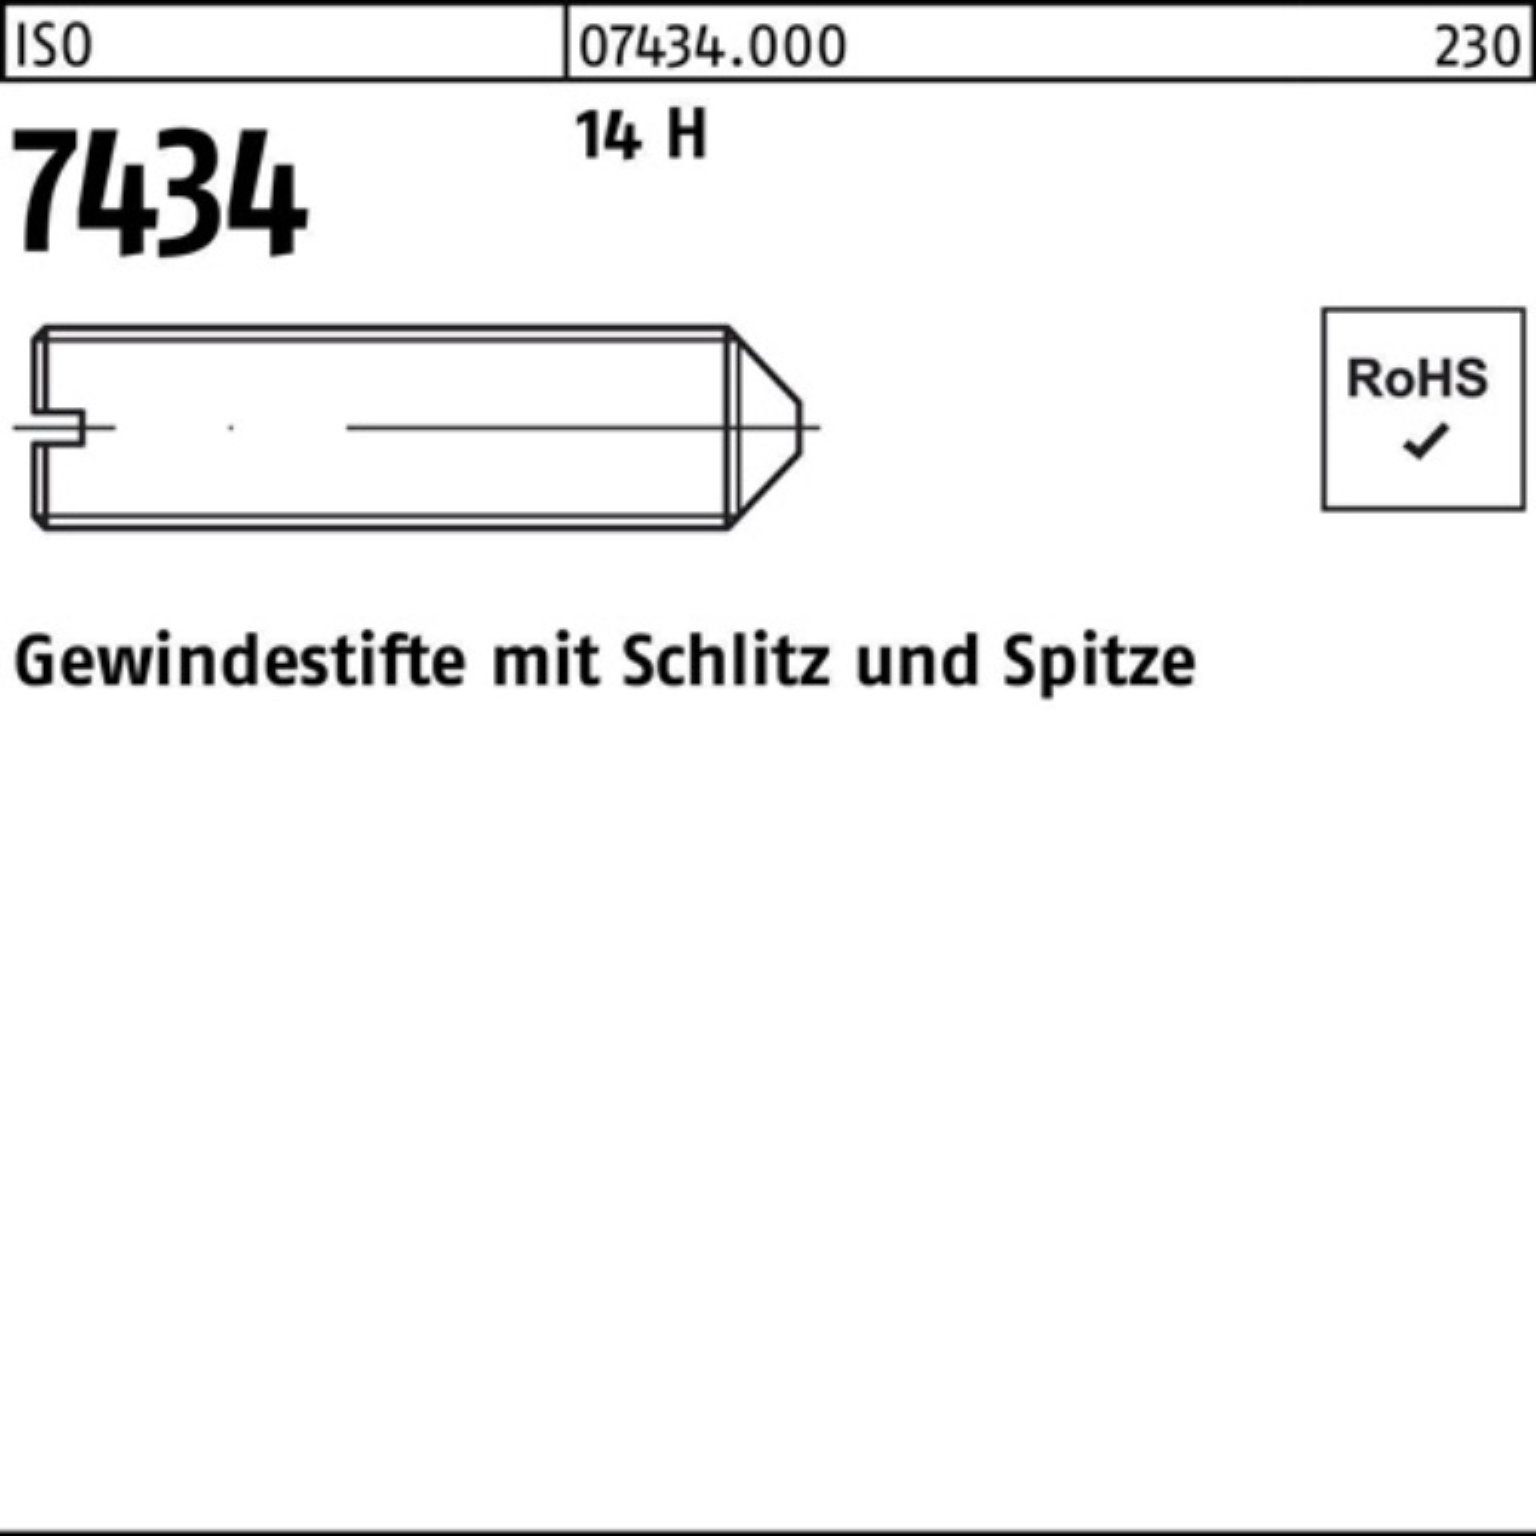 14 Reyher Gewindebolzen ISO Spitze/Schlitz Stüc 5 M5x H 7434 1000 Pack Gewindestift 1000er